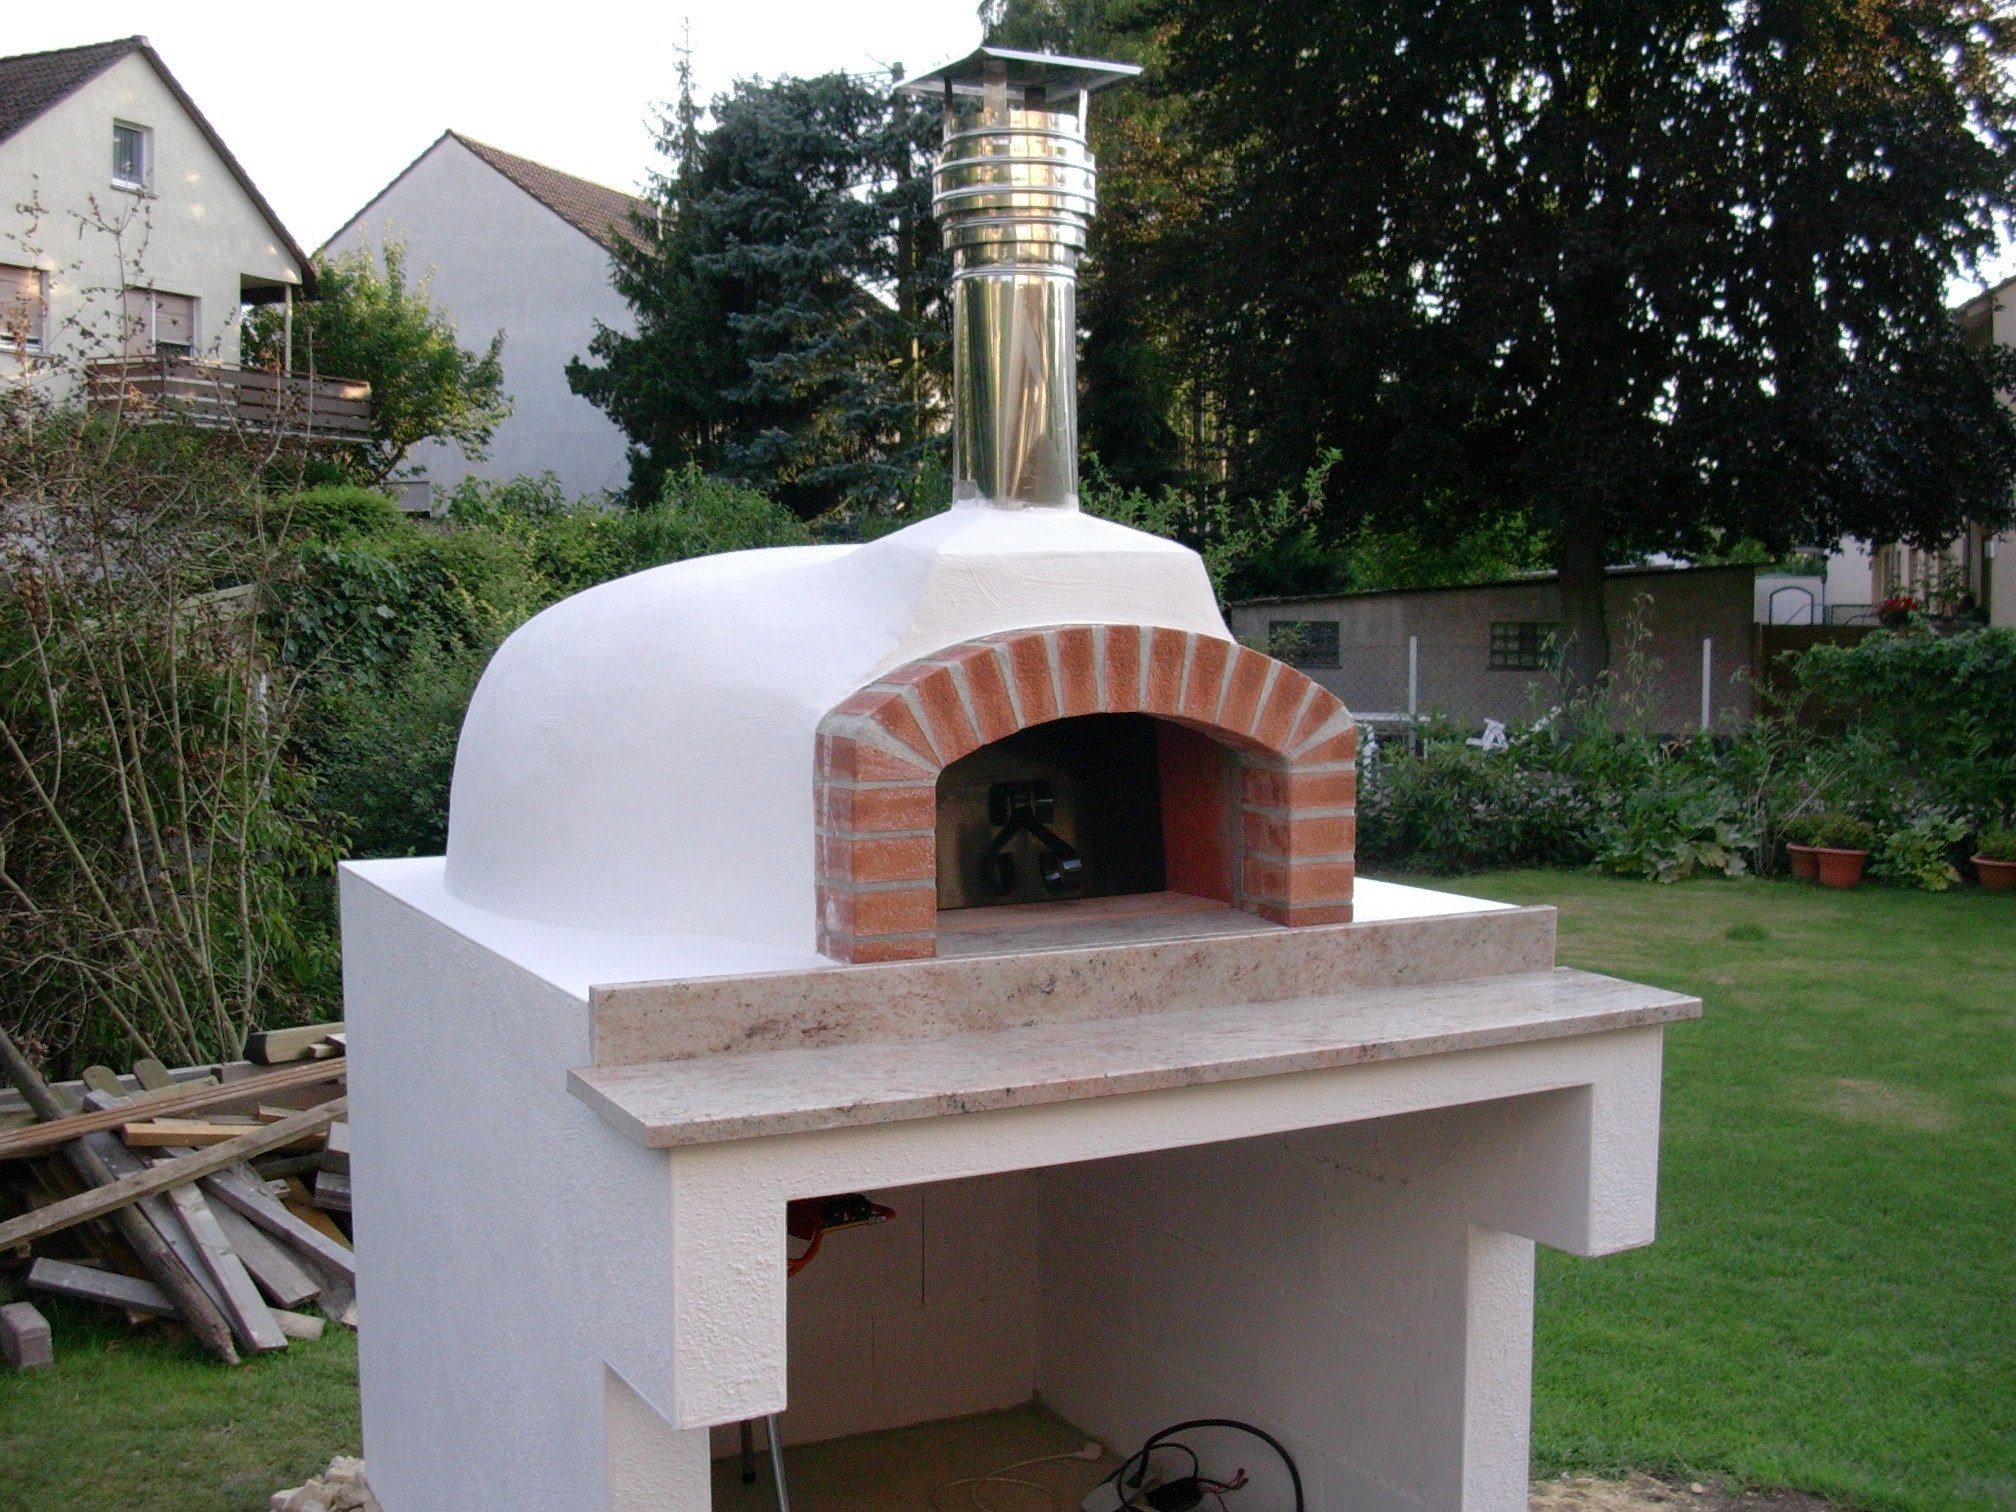 Forni Valoriani Pizzaofen Bausatz: Ein Hauch von Italien zuhause